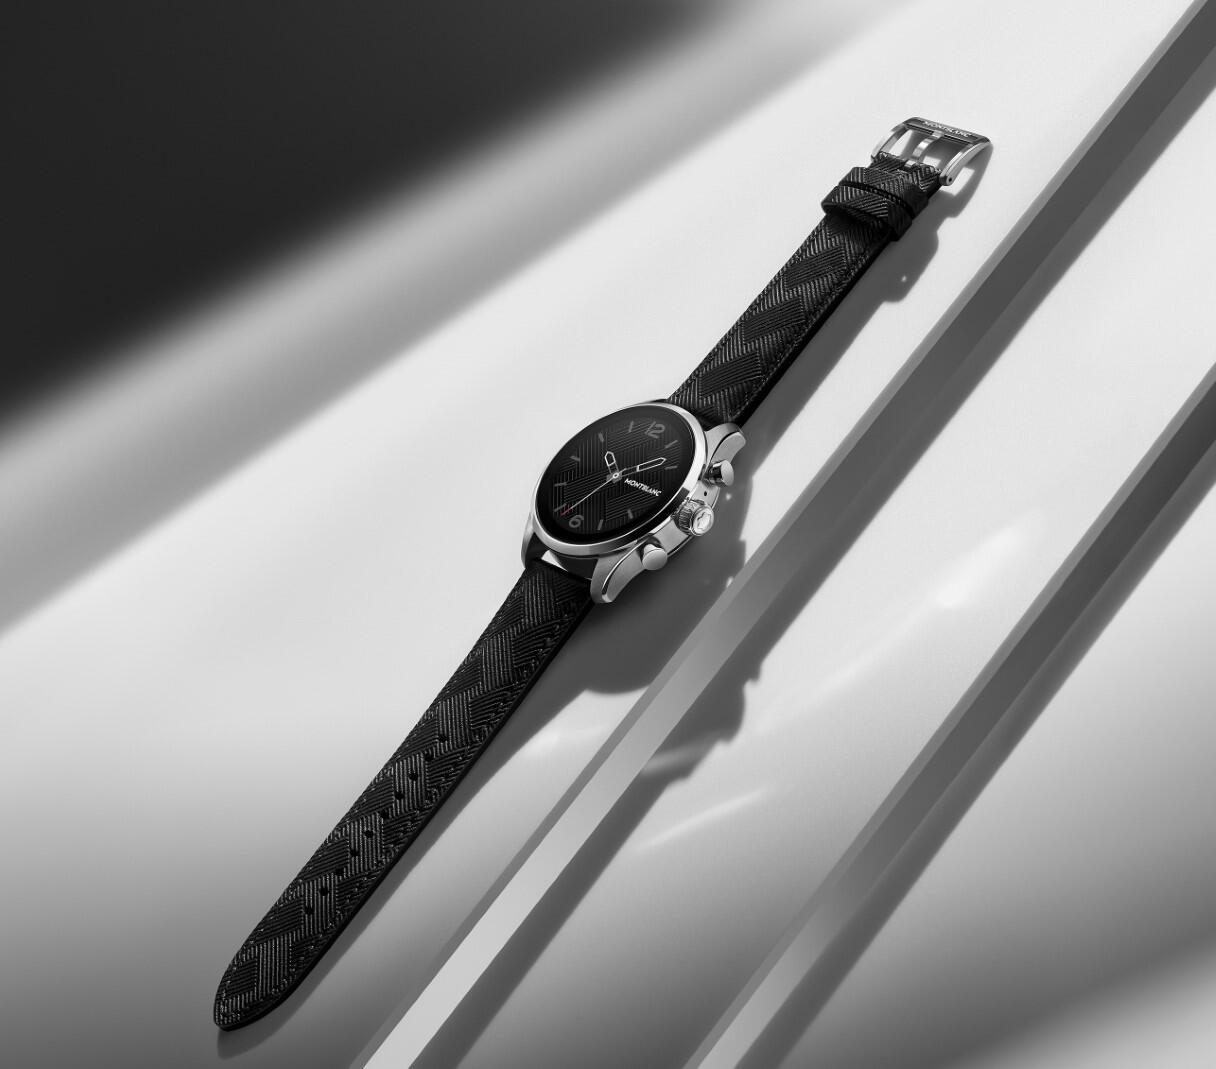 Montblanc Summit 3 : la smartwatch de luxe Google Wear OS équipée du nouveau processeur Snapdragon Wear